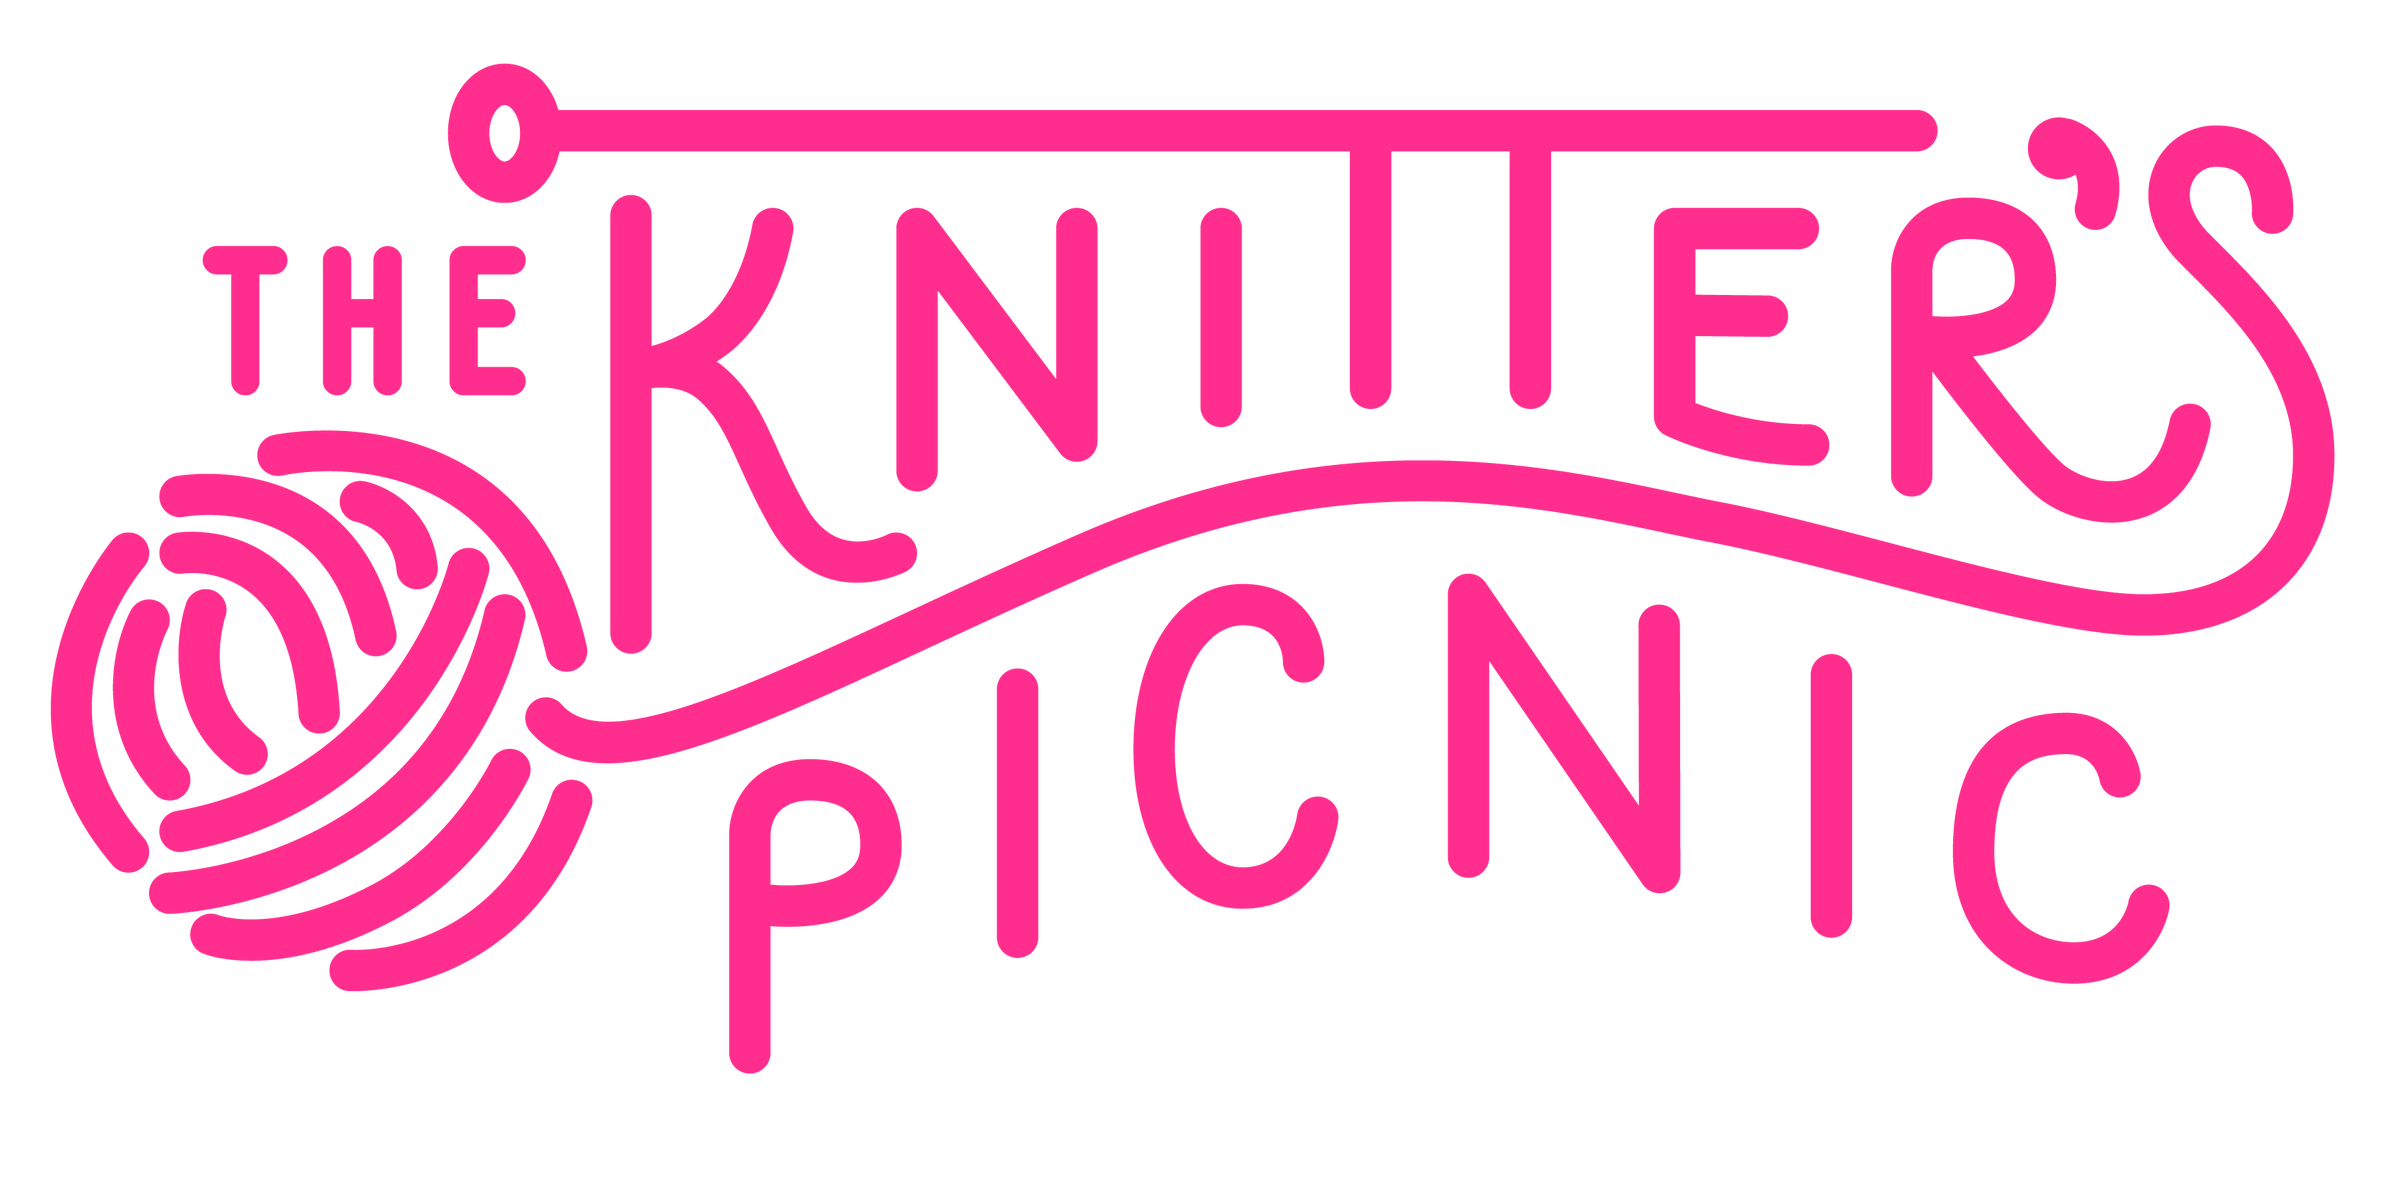 The Knitter's Picnic | The Knitter's Picnic